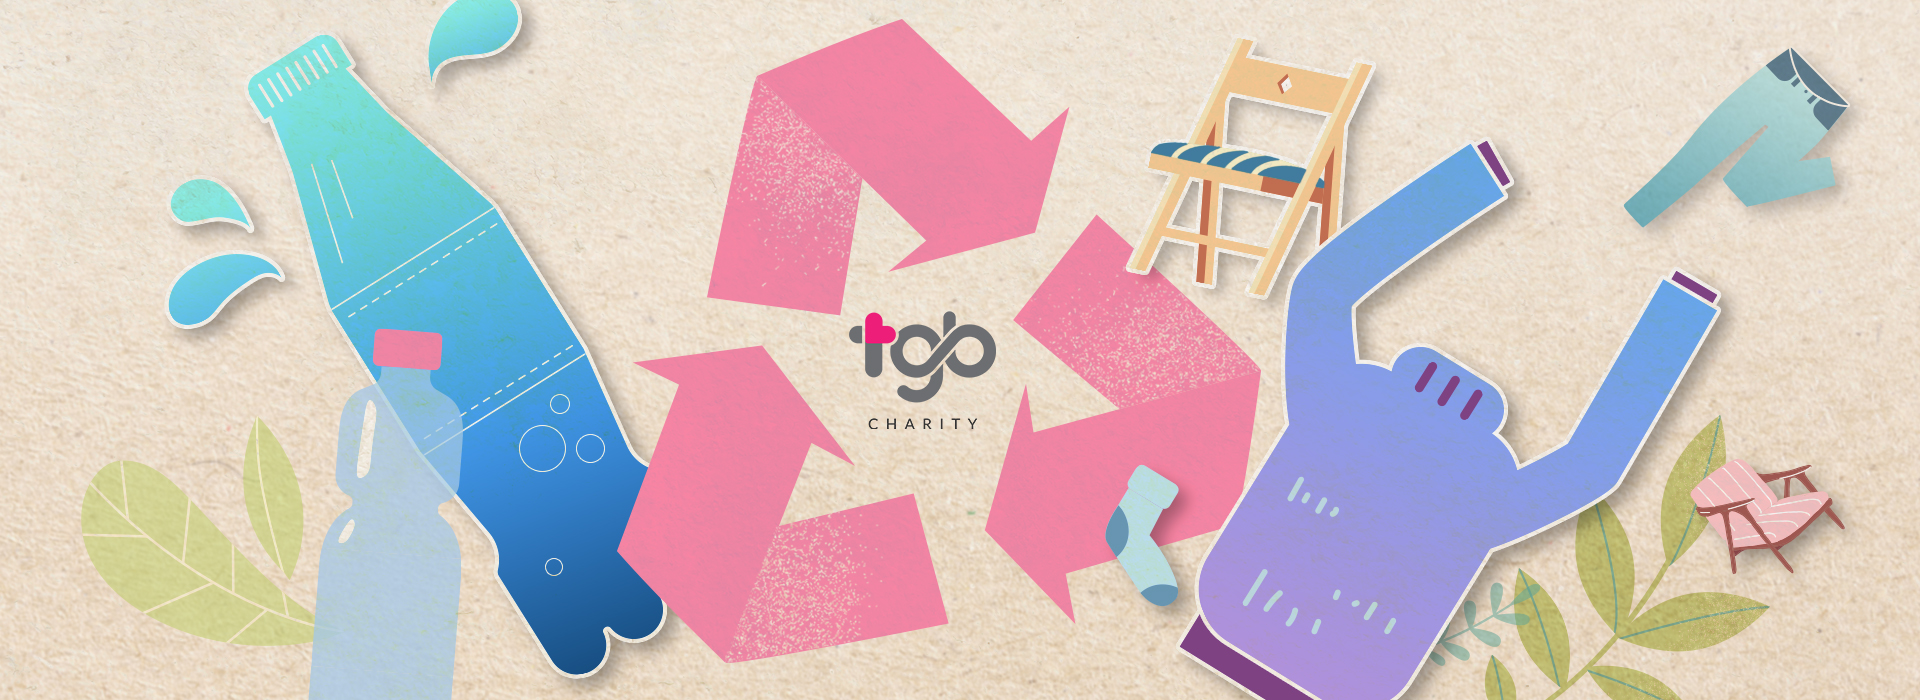 TGB Charity - 无论是塑料瓶、二手衣或旧家具，现在你有更好的处置方式。闭合循环。回收，再利用，垃圾减量。回购再转售